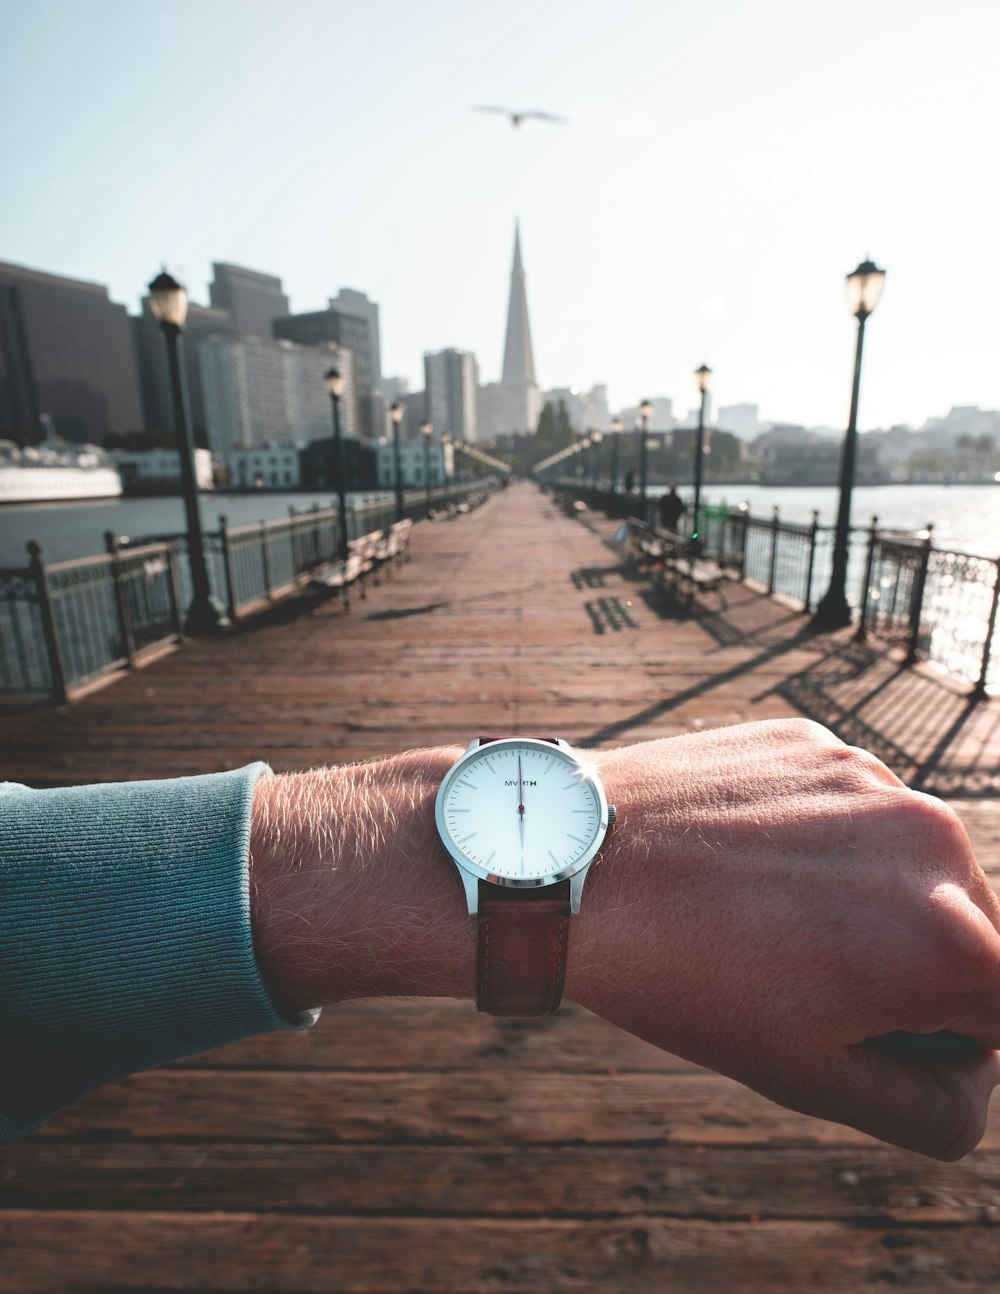 Persona que lleva un reloj analógico redondo de color plateado con correa de cuero que muestra la hora de las 12:00